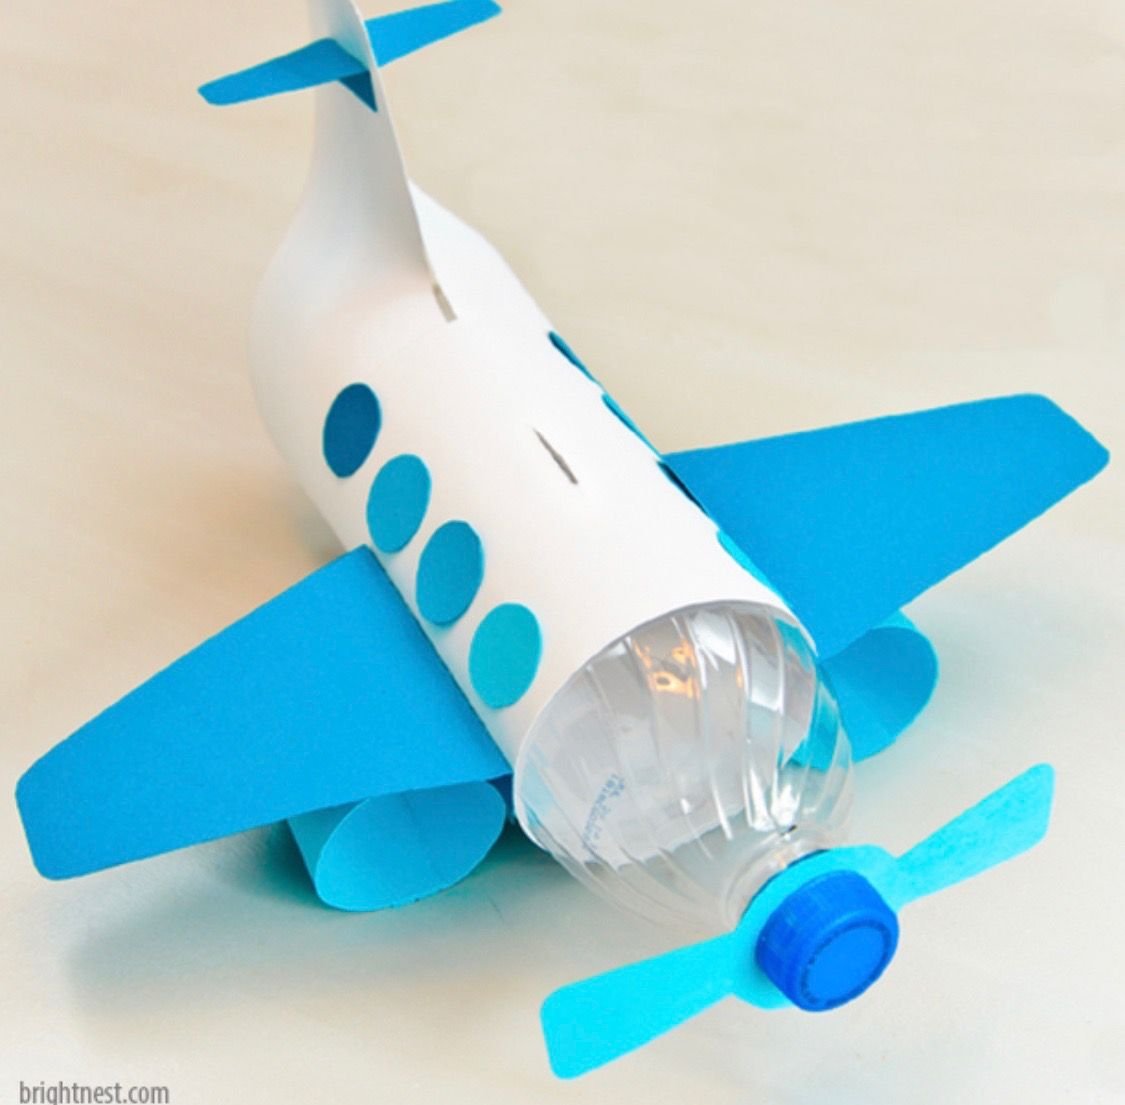 Как правильно сделать самолет из бумаги, который будет далеко лететь